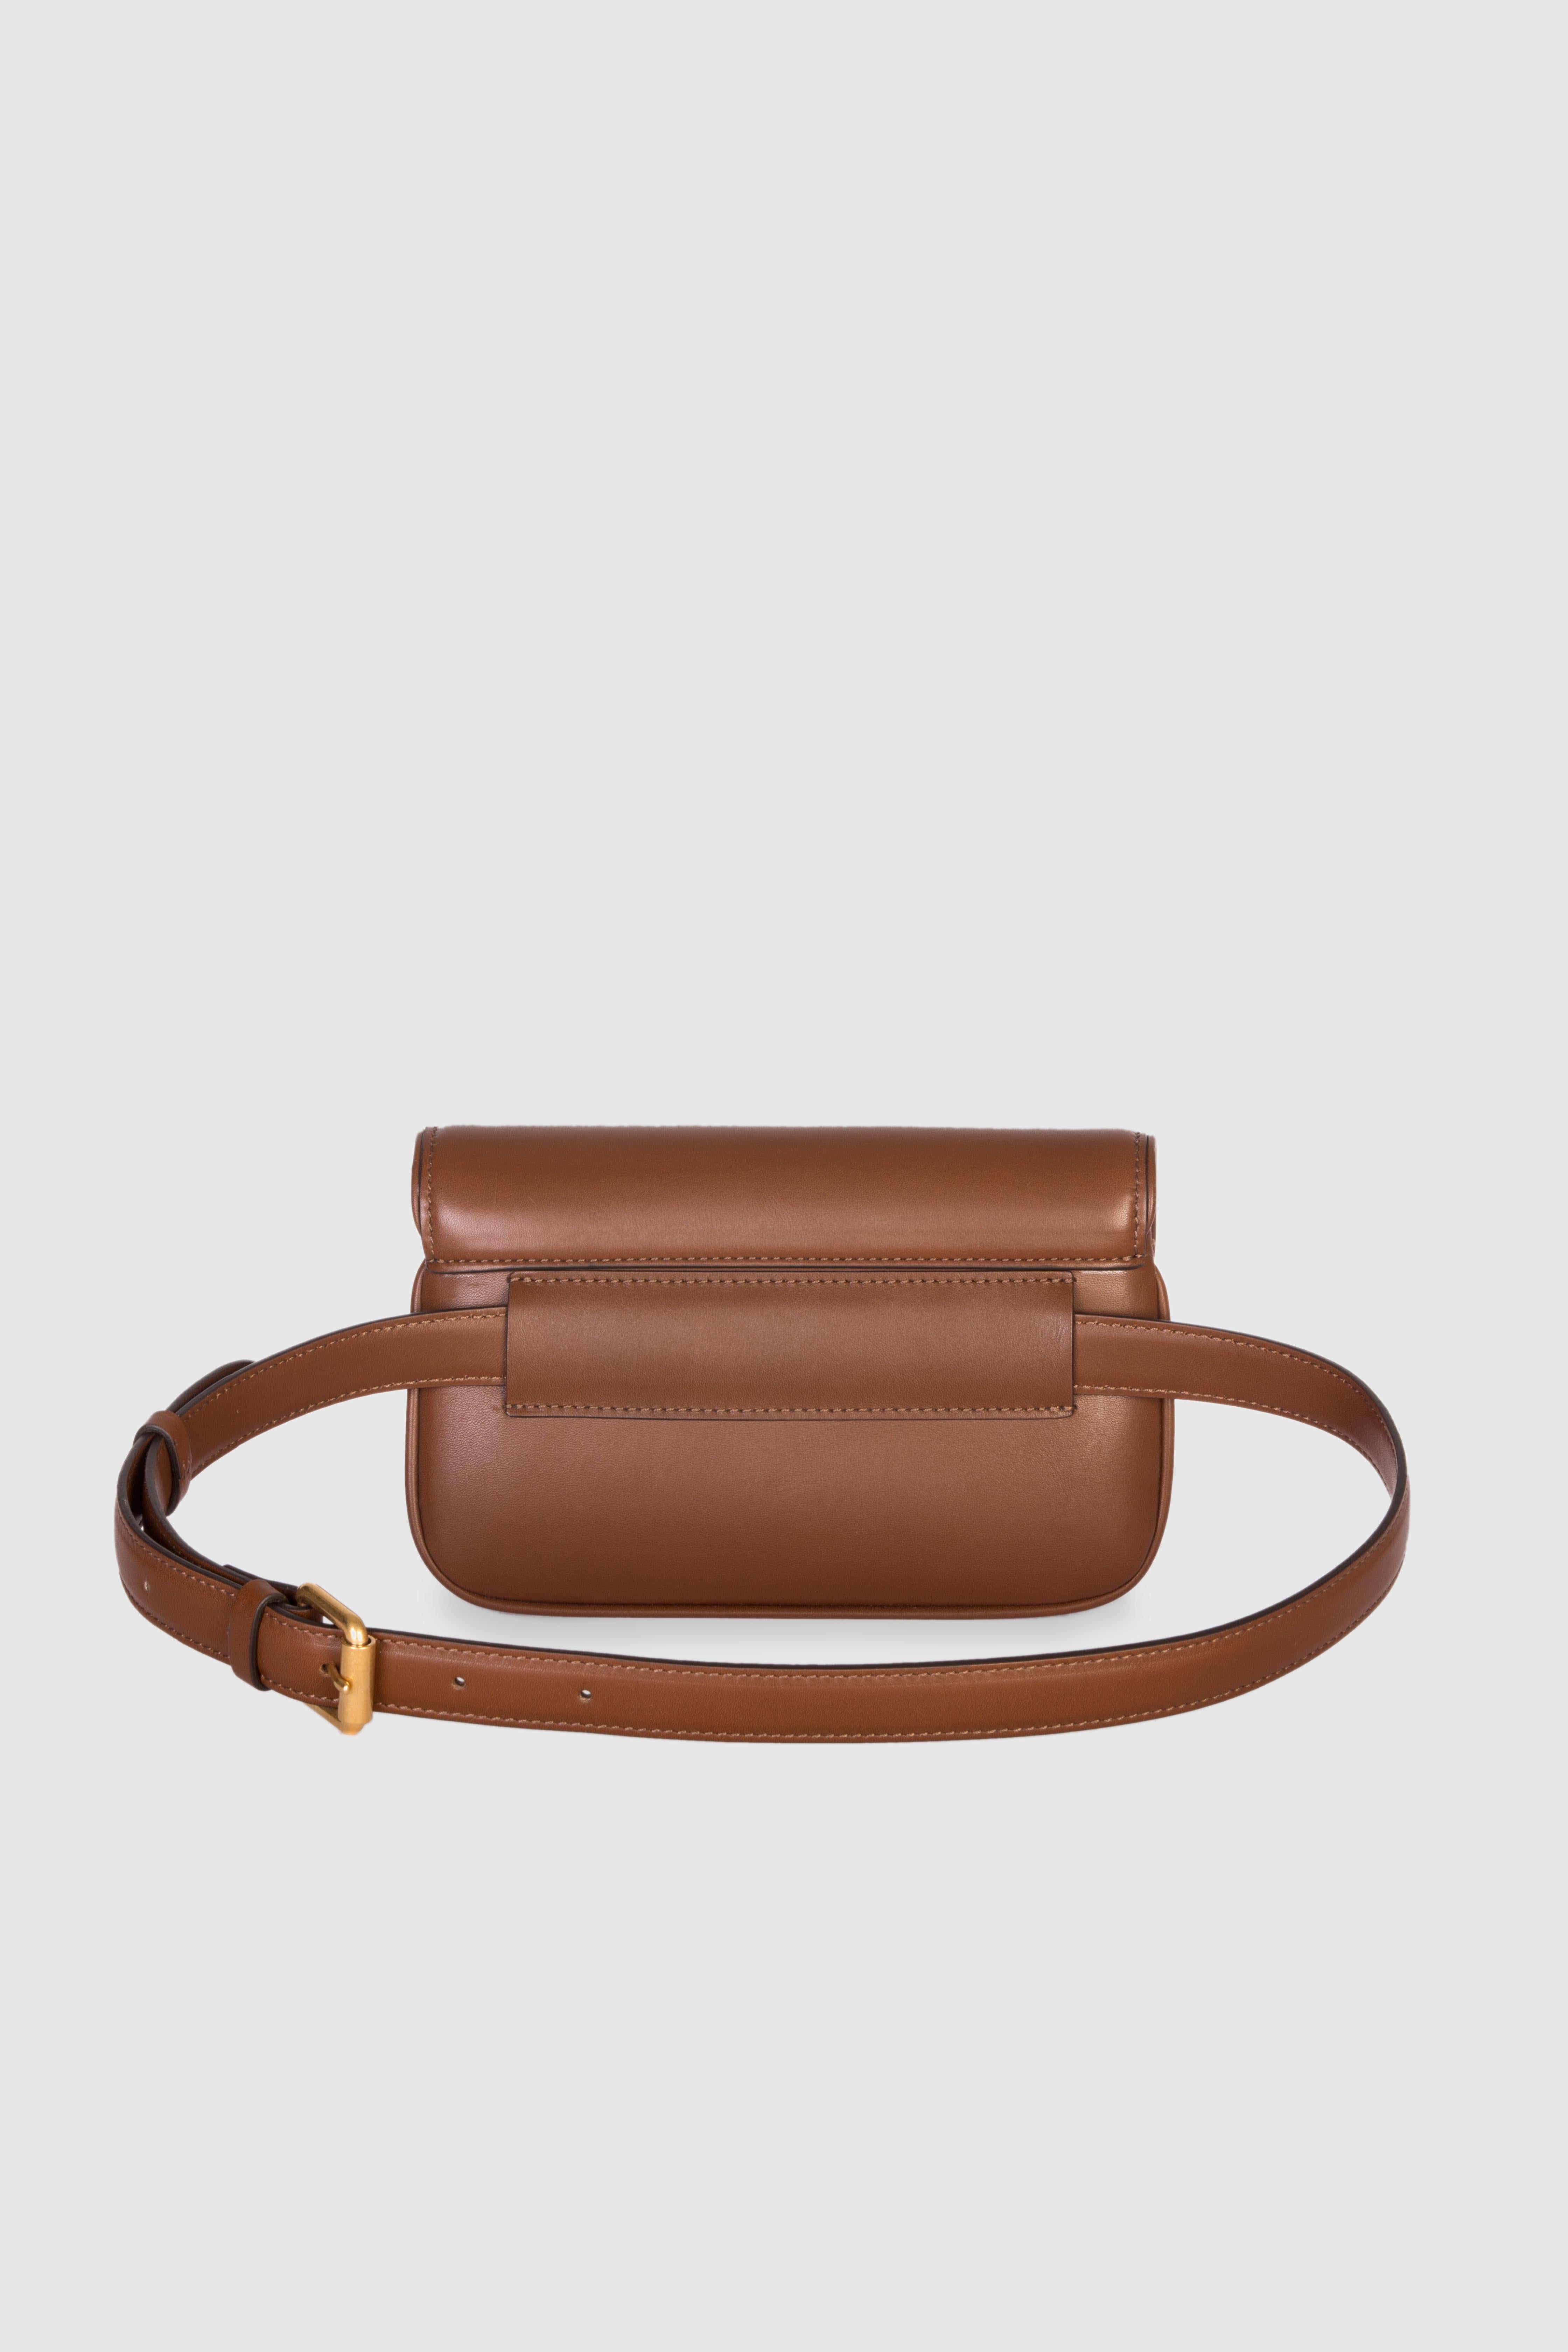 Brown leather shoulder bag NWOT 2